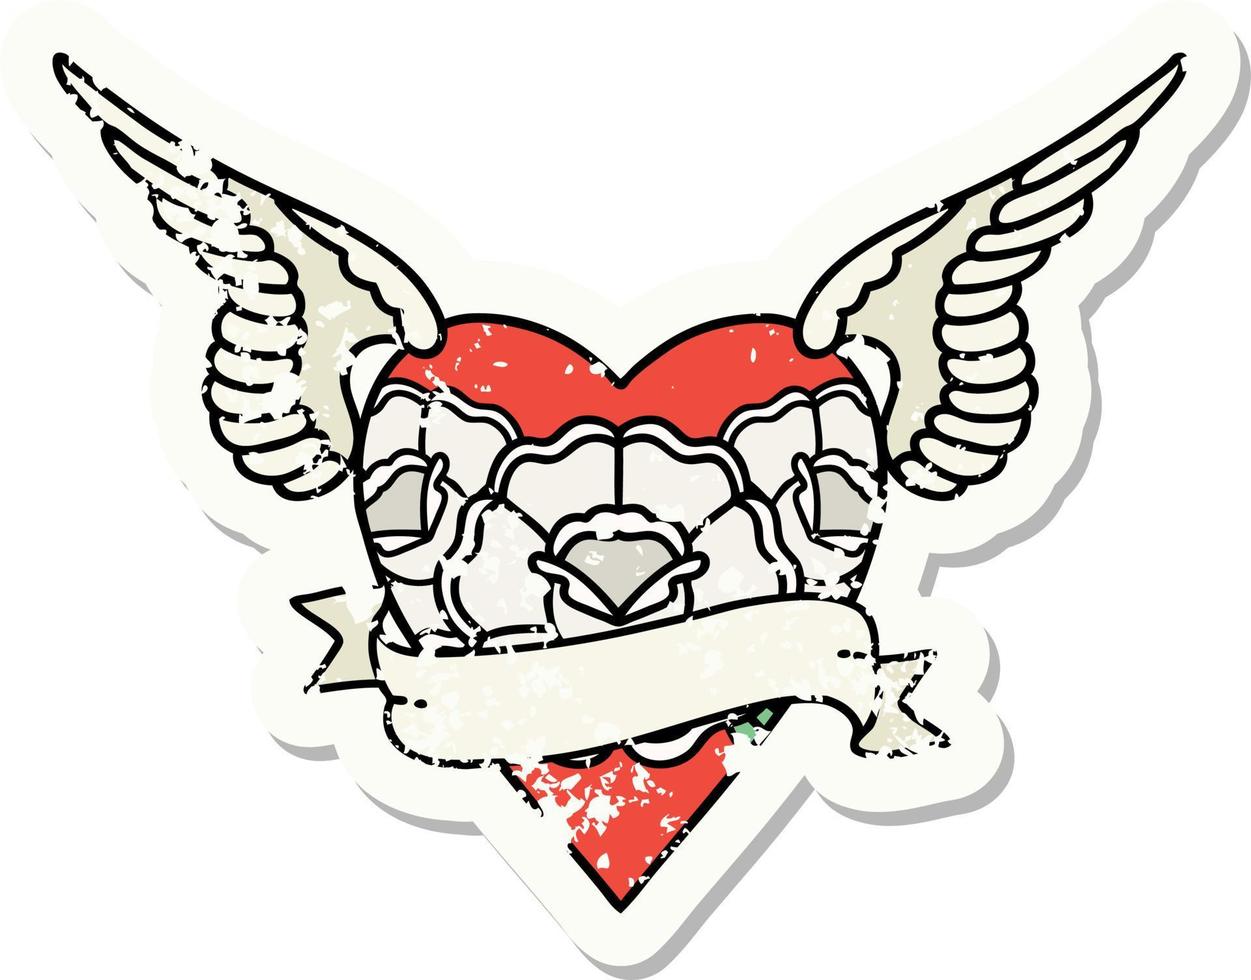 Distressed Sticker Tattoo im traditionellen Stil des Herzens mit Flügeln, Blumen und Banner vektor